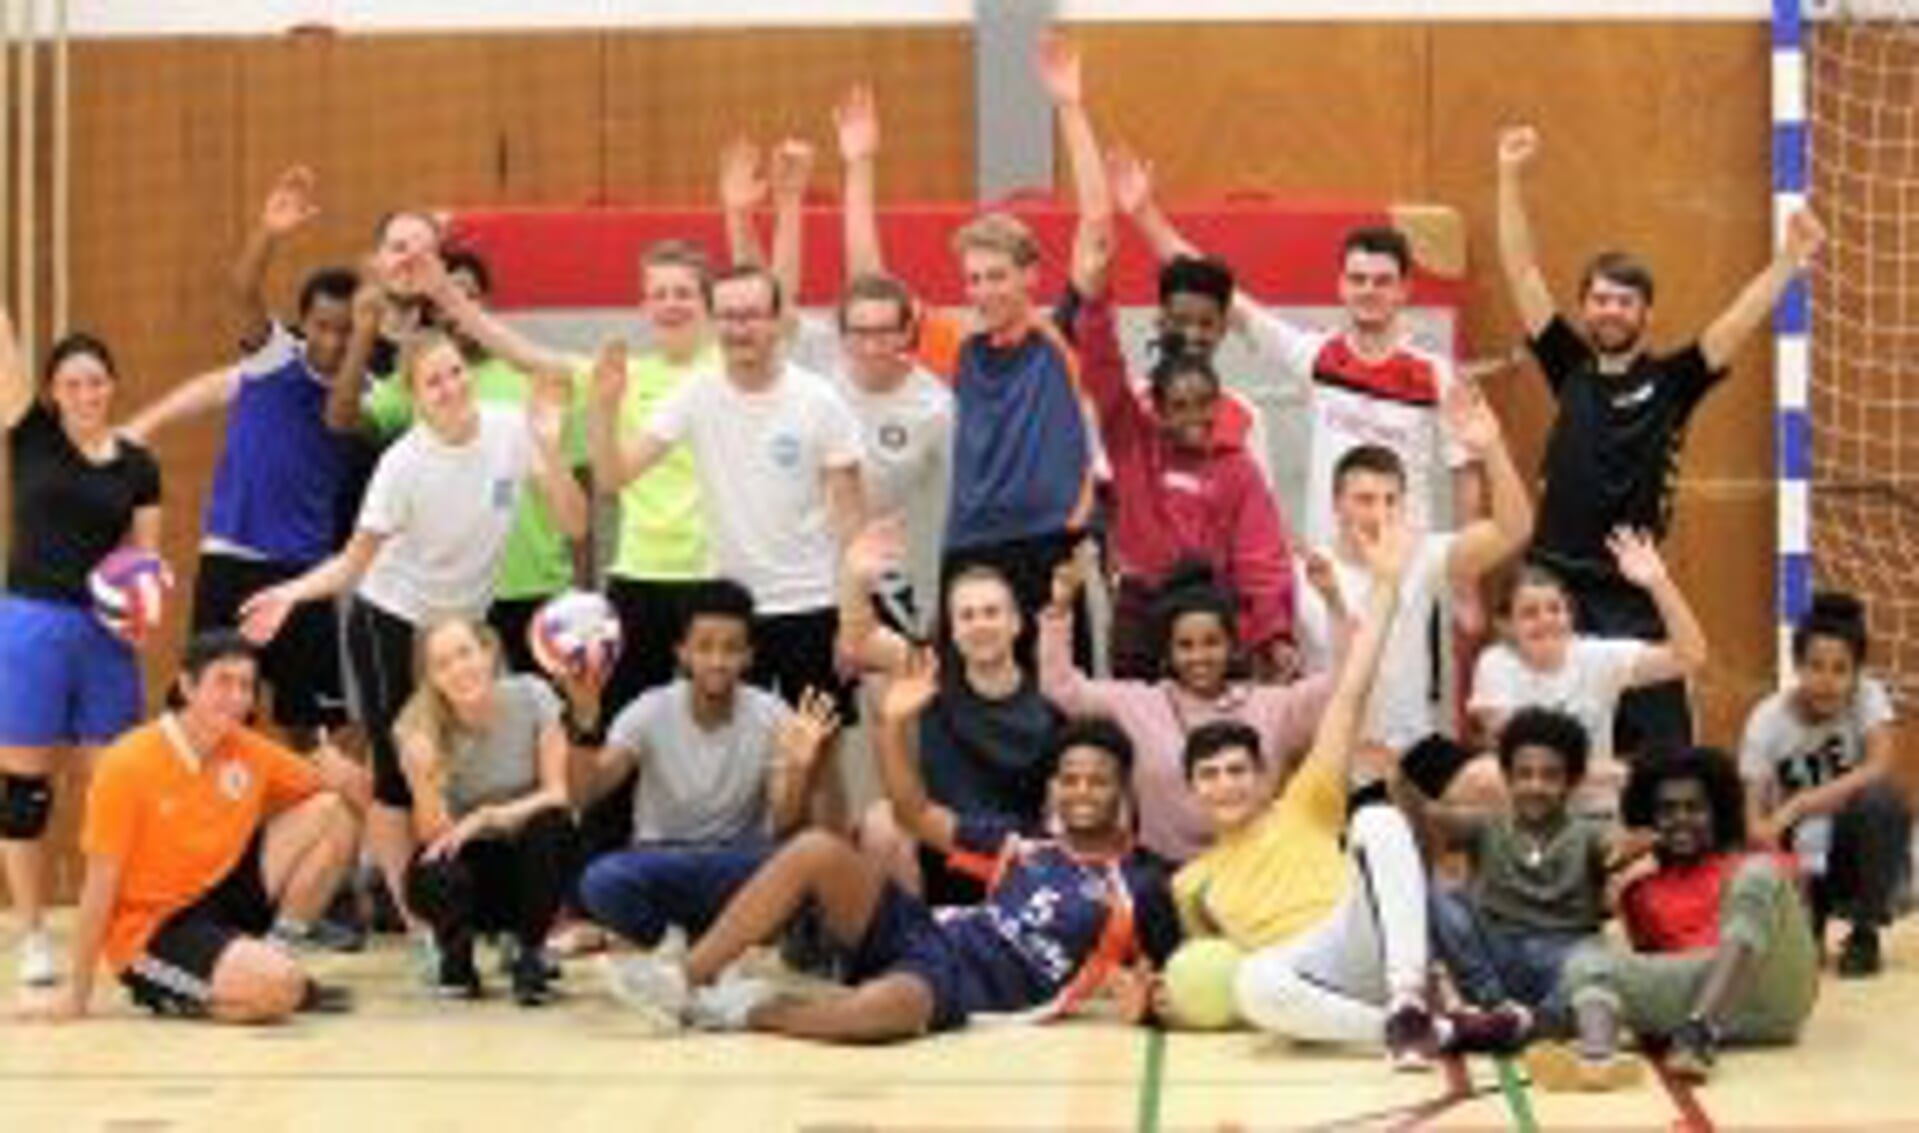 Connect-Us verzorgt geregeld sporttoernooien om Nederlandse jongeren en vluchtelingenjongeren met elkaar in contact te brengen. In Woudenberg vindt in samenwerking met het CDJA op zaterdag 8 juni een volleybaltoernooi plaats.